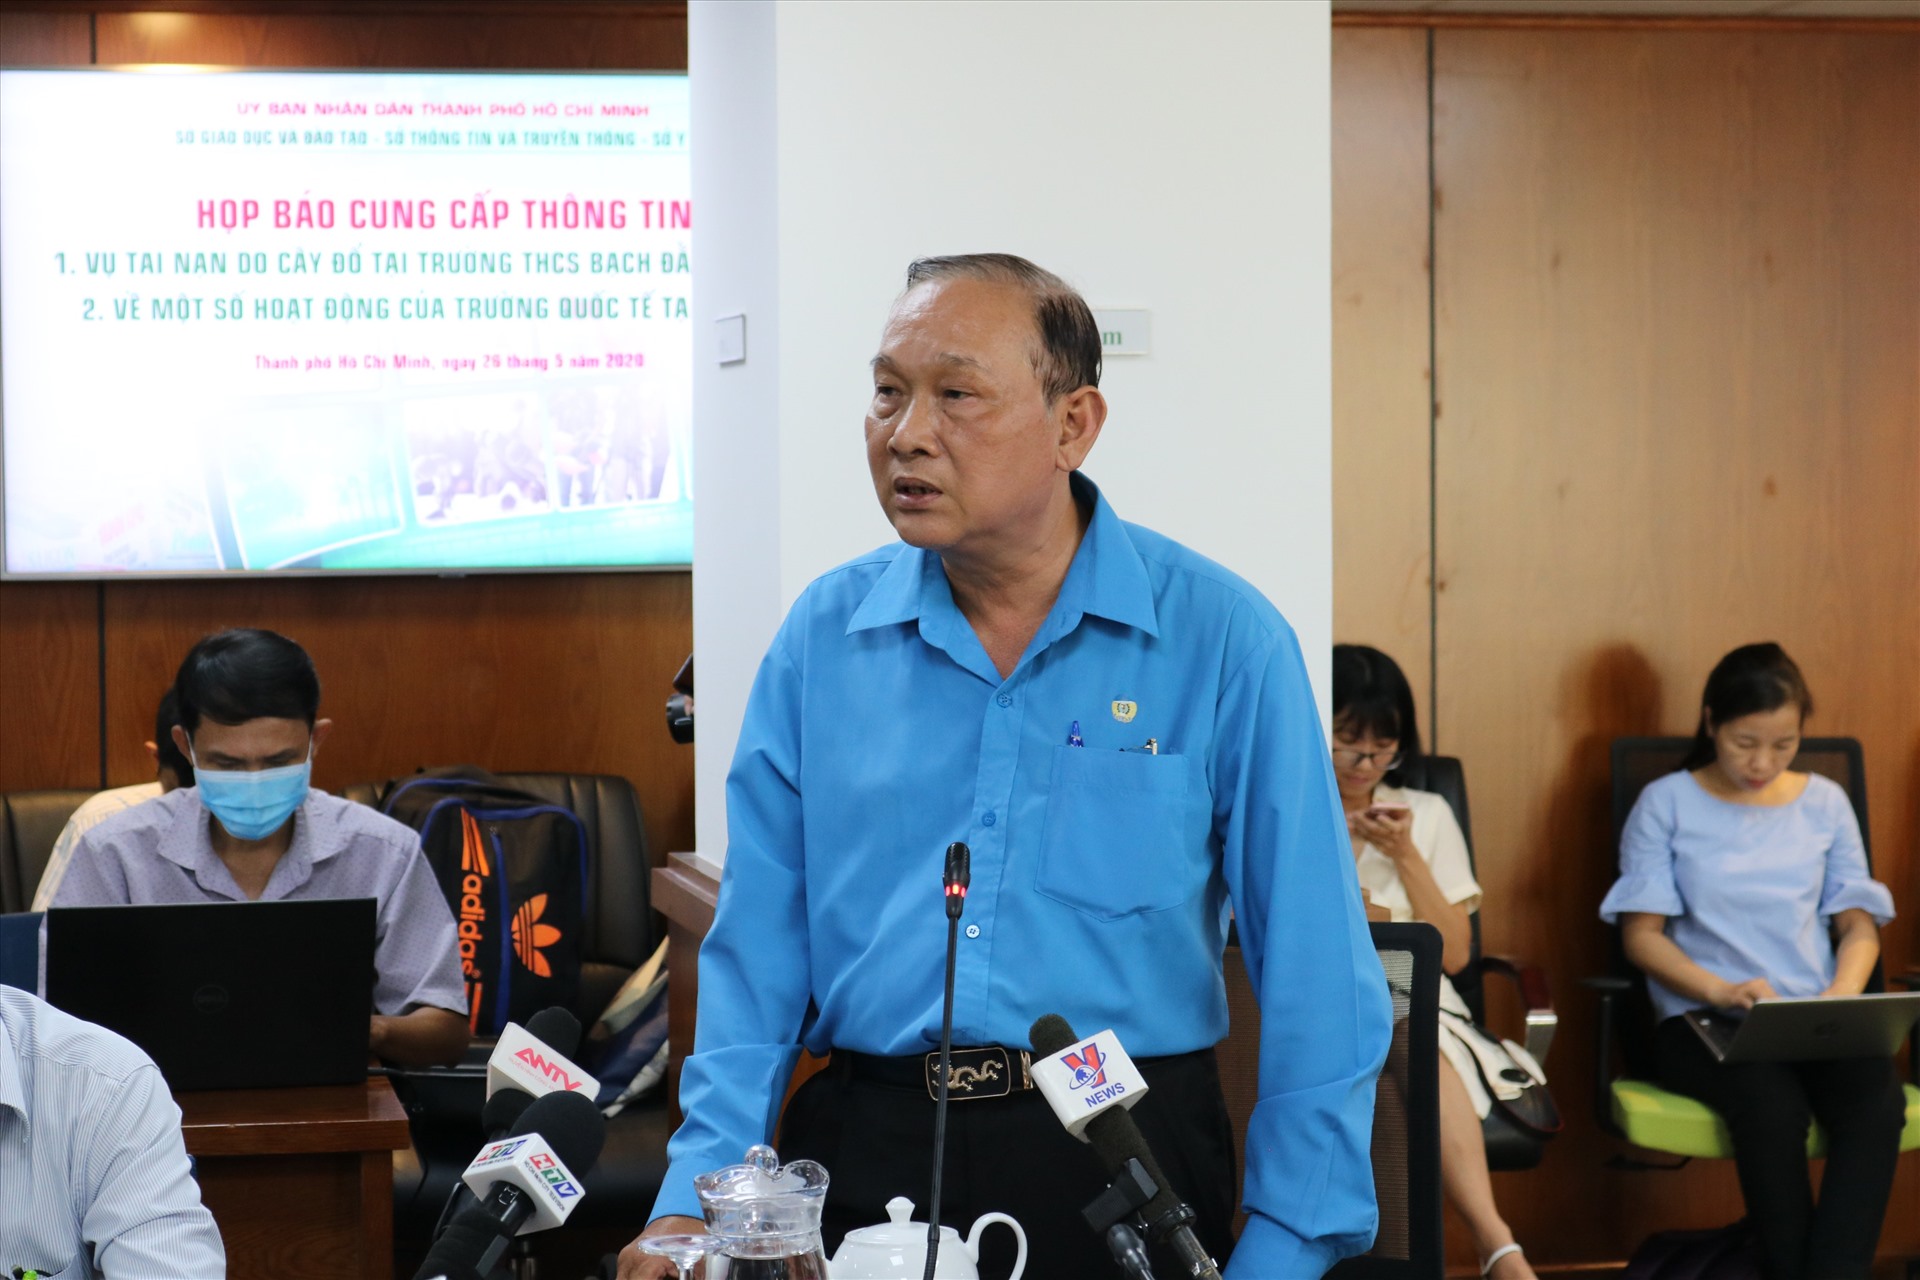 Ông Nguyễn Văn Phúc - Hiệu trưởng trường THCS Bạch Đằng nói bất ngờ trước sự việc cây đổ đè học sinh thương vong.